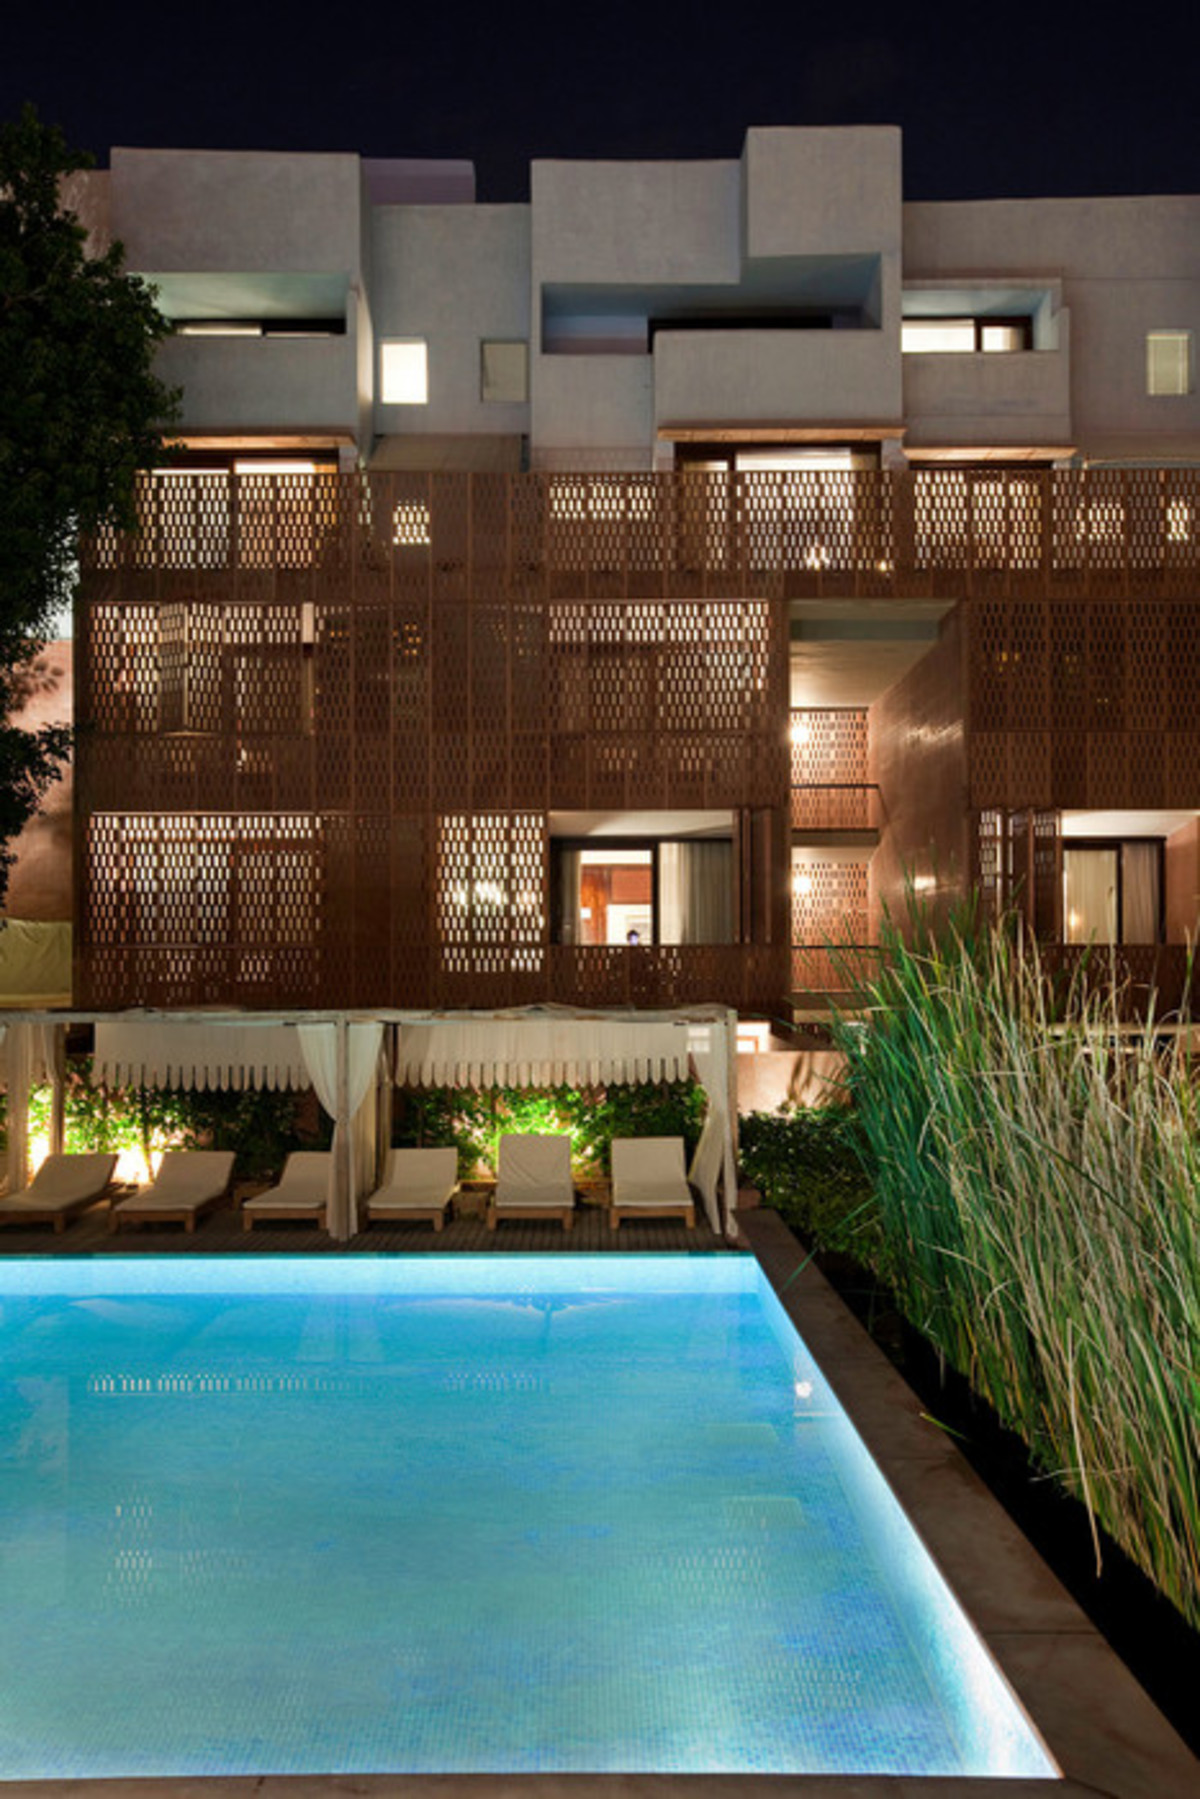 Hotel Raas w Indiach - nagrodzony WAF Award 2011 w kategorii Budynek Wakacyjny. Autor projektu: Lotus Praxis Initiative; fot.: andré j fanthome